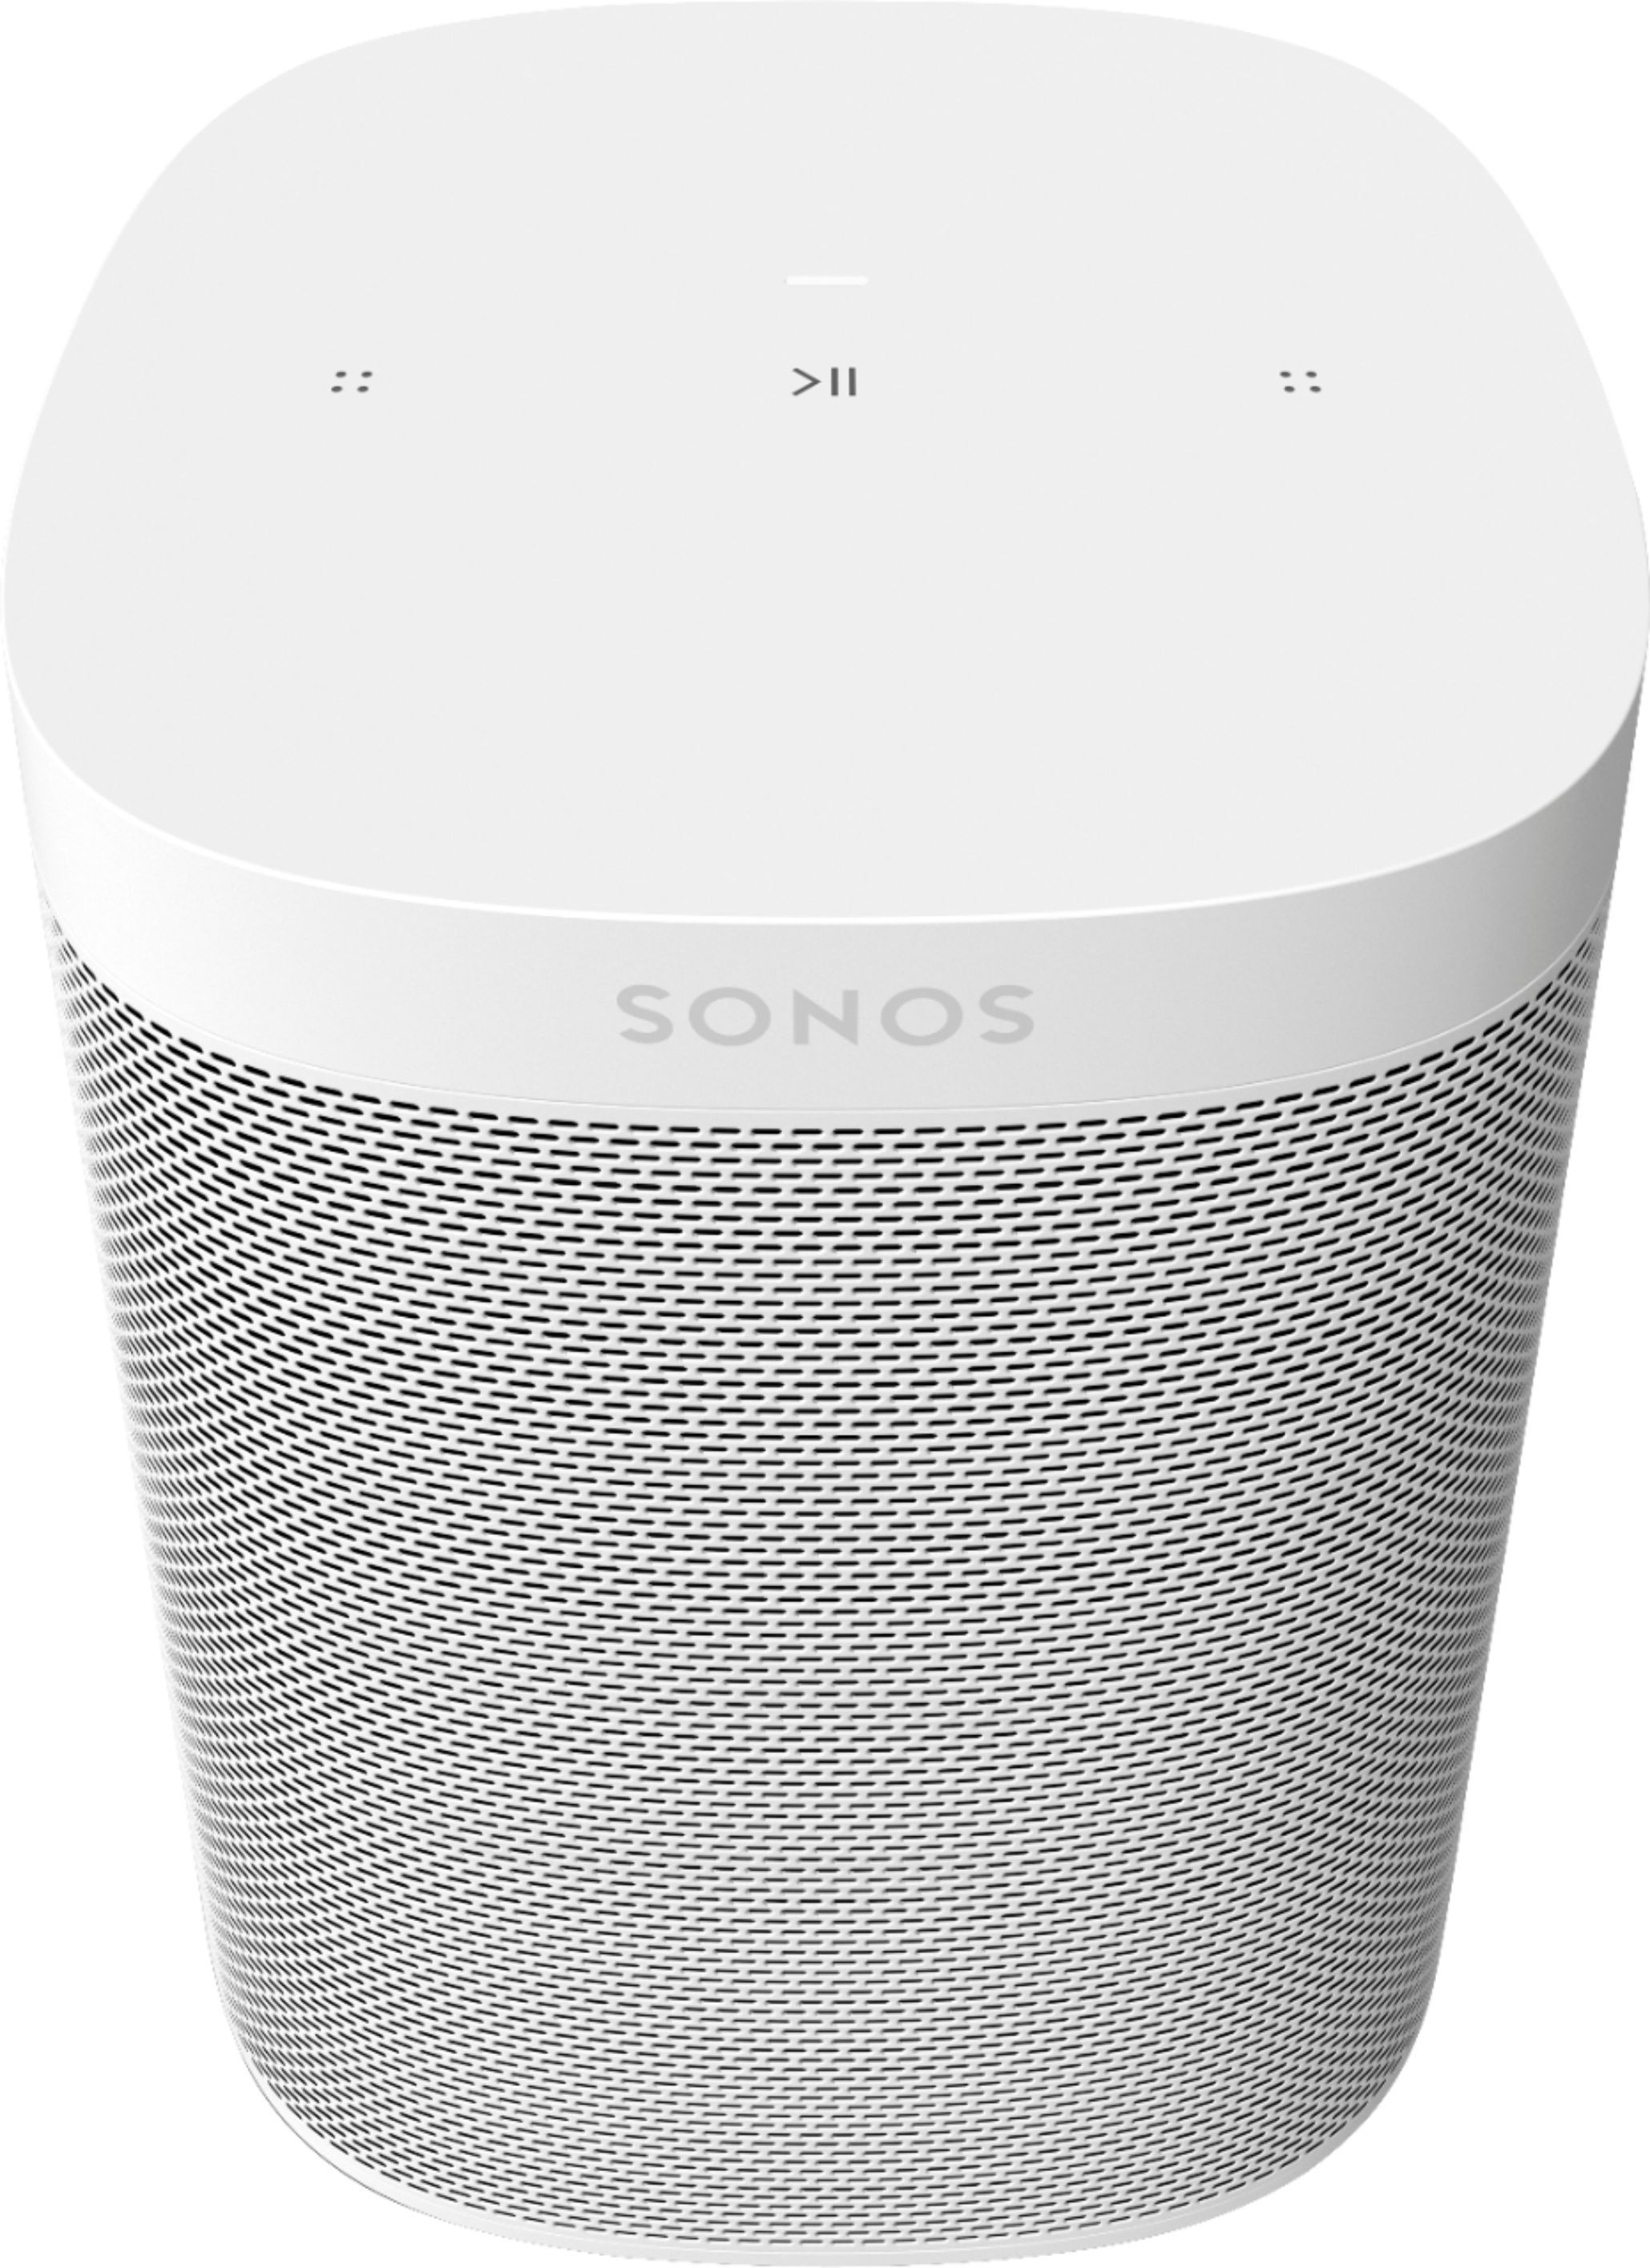 Sonos One SL Wireless Smart Speaker White ONESLUS1   Best Buy